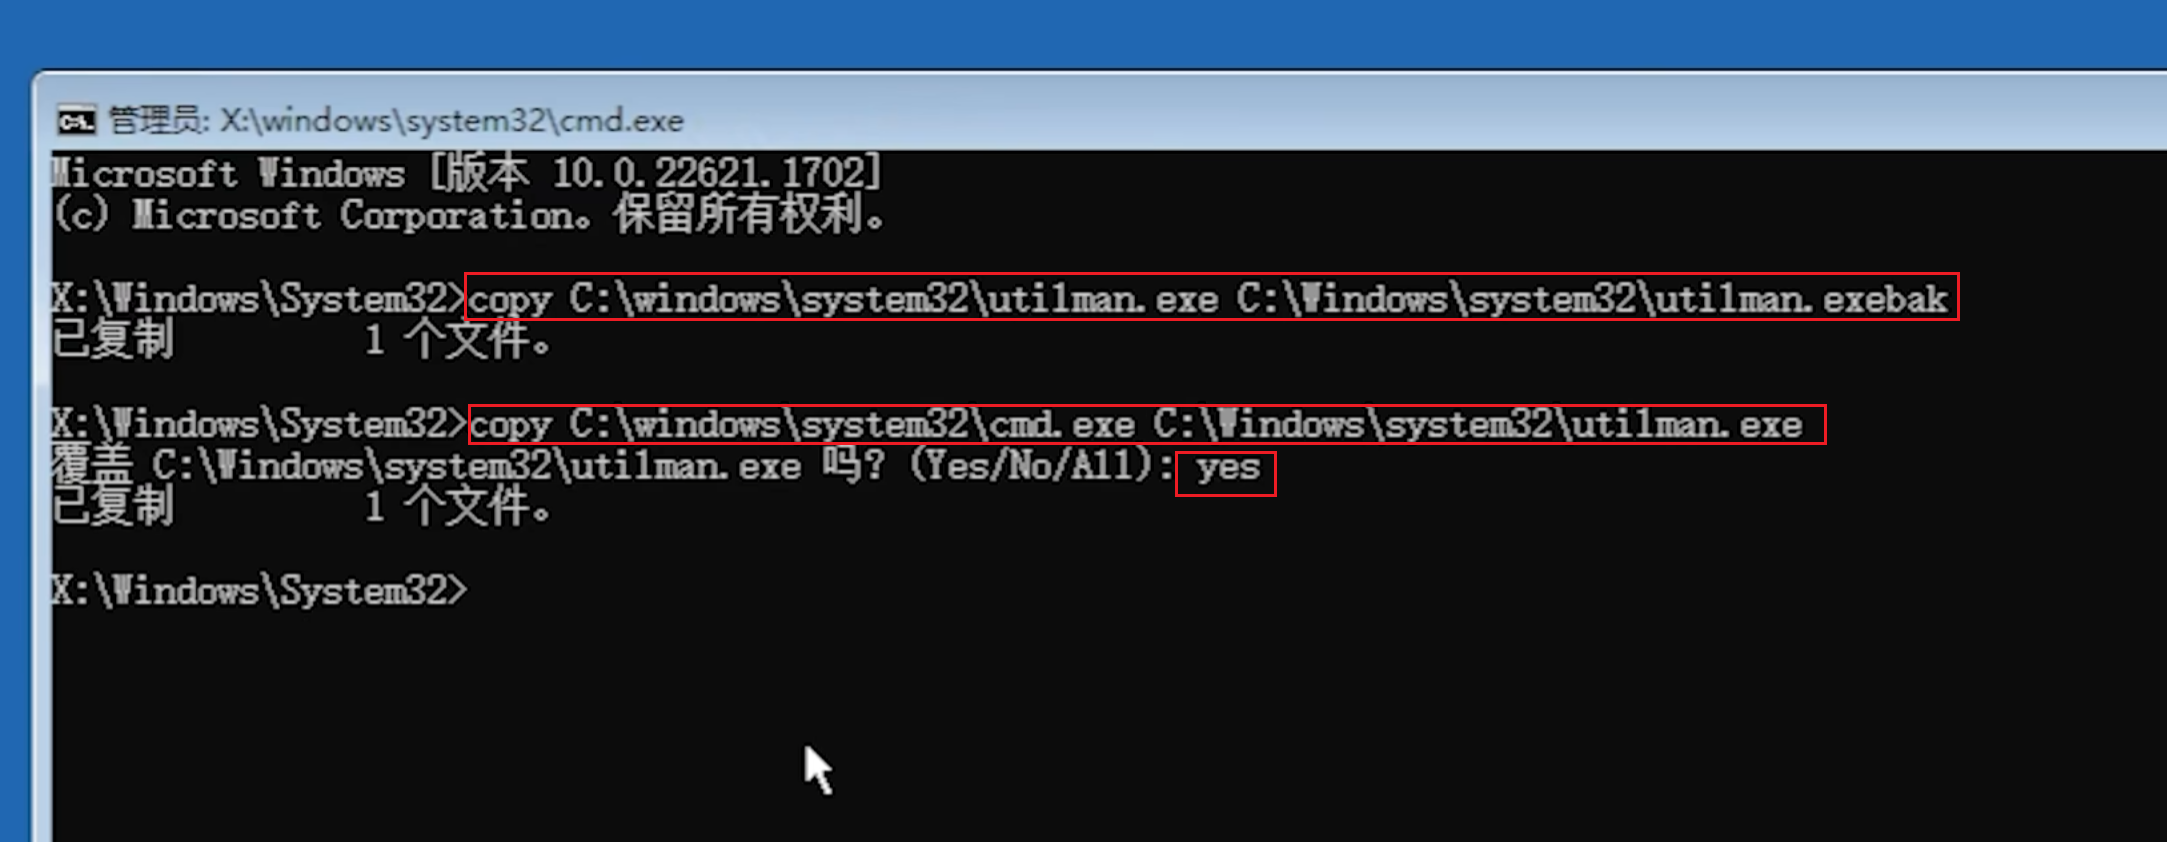 【技术教程】Windows忘记密码进入系统教程！Windows 10 21H2及以上版本适用！